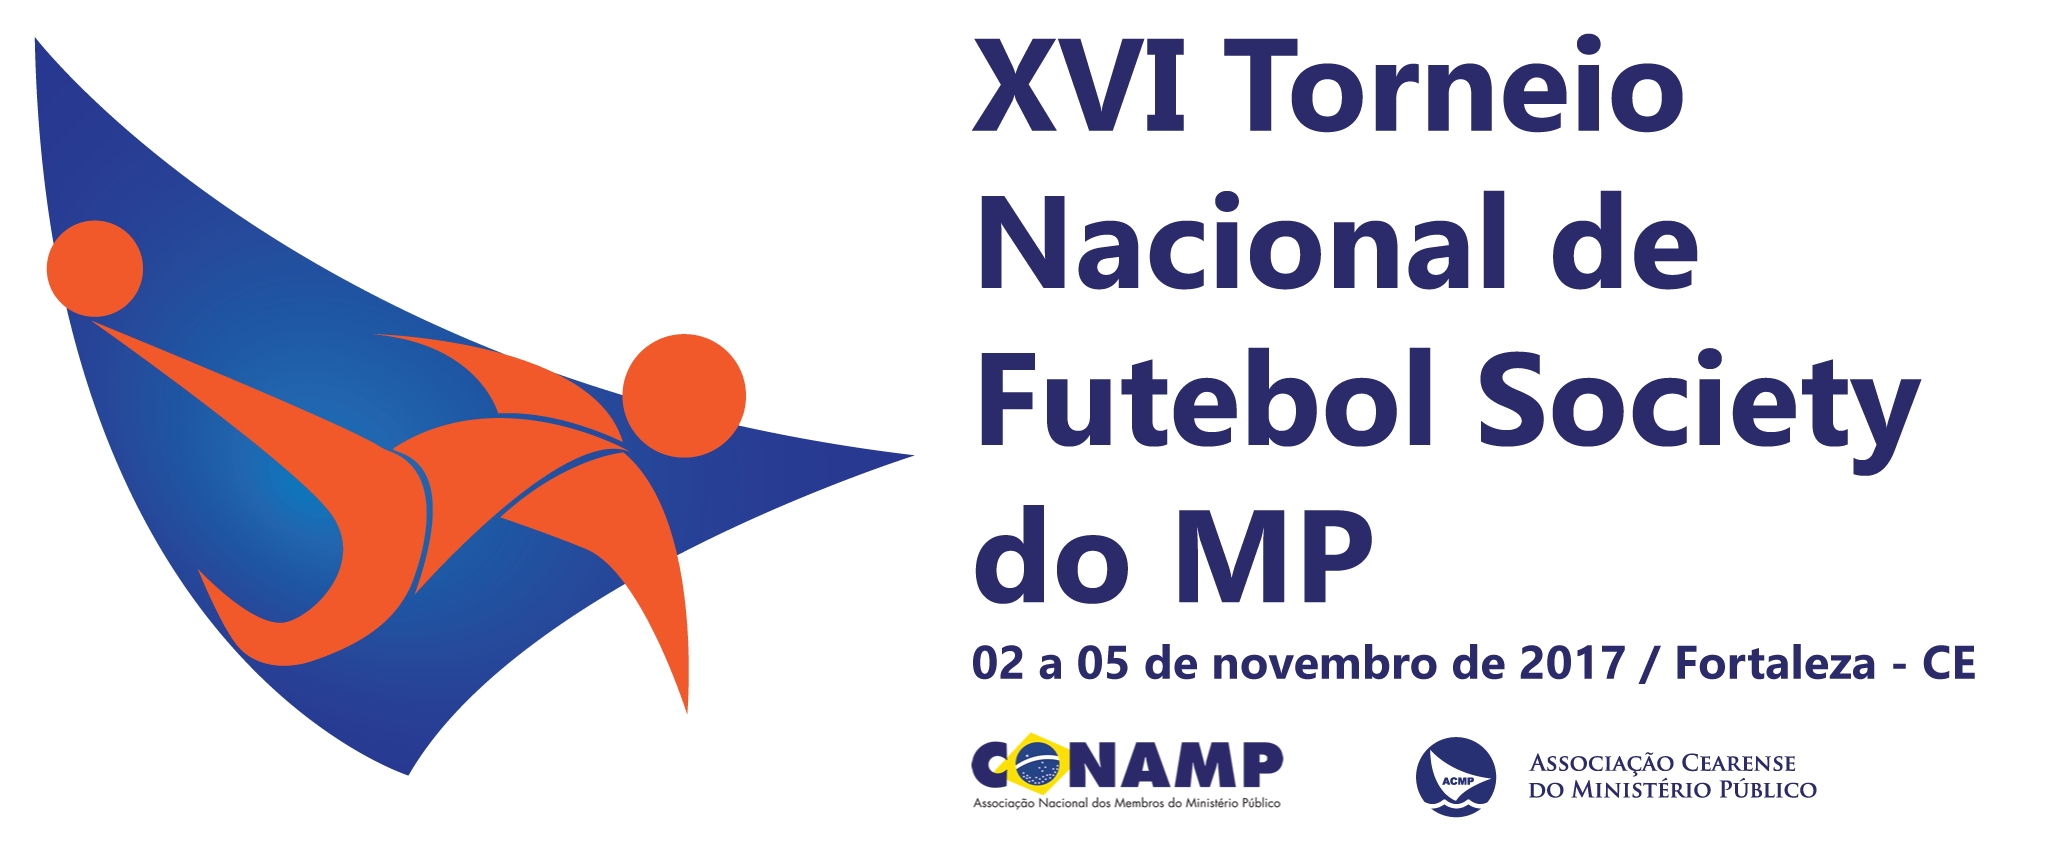 Abertas as inscrições para o XVI Torneio Nacional de Futebol Society, no Ceará